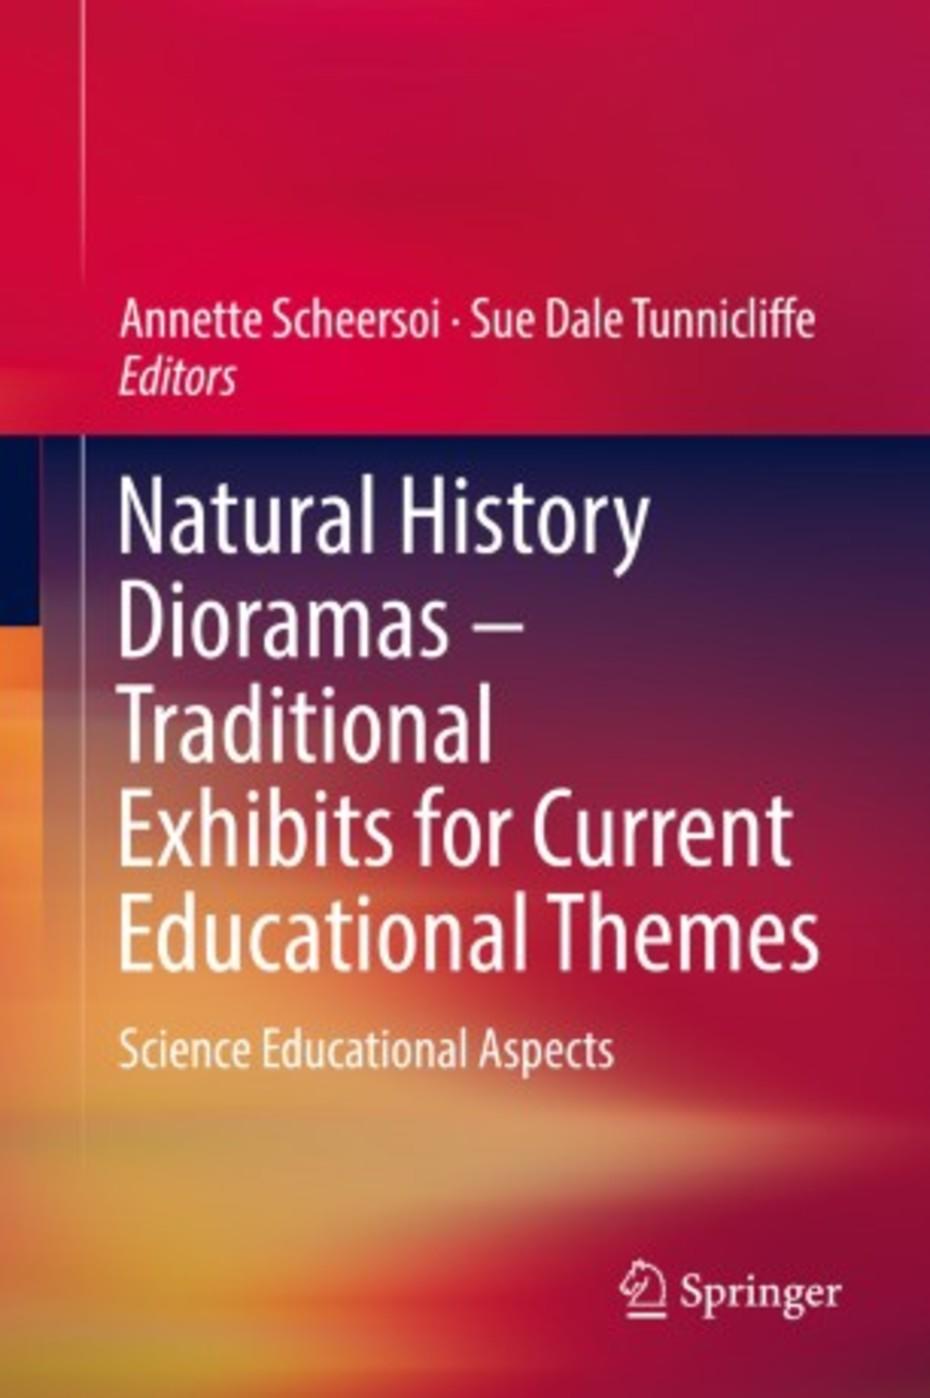 Natural History Dioramas (Cover)